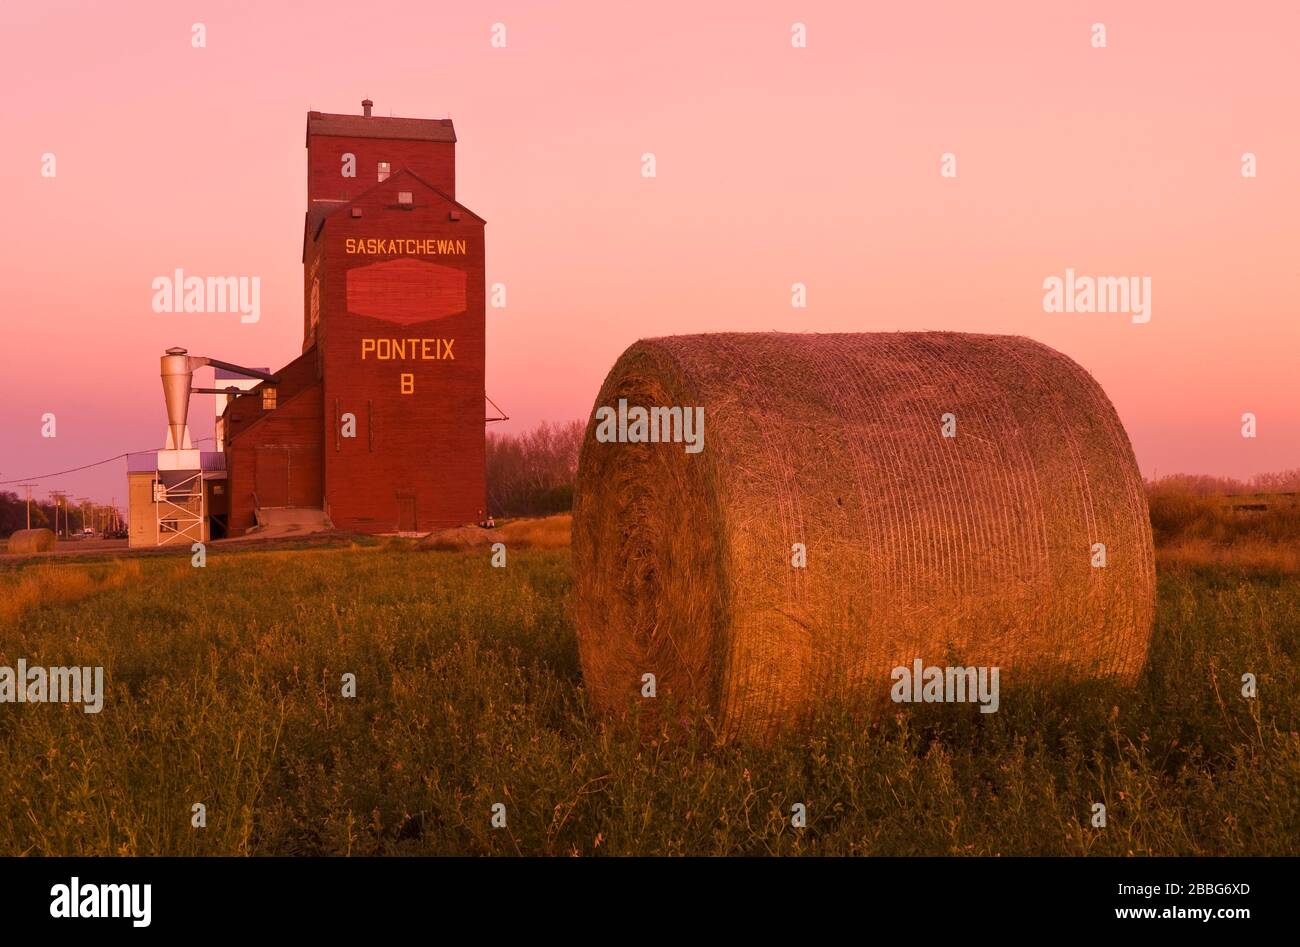 Balas redondas de alfalfa y elevador de grano, Ponteix, Saskatchewan, Canadá Foto de stock